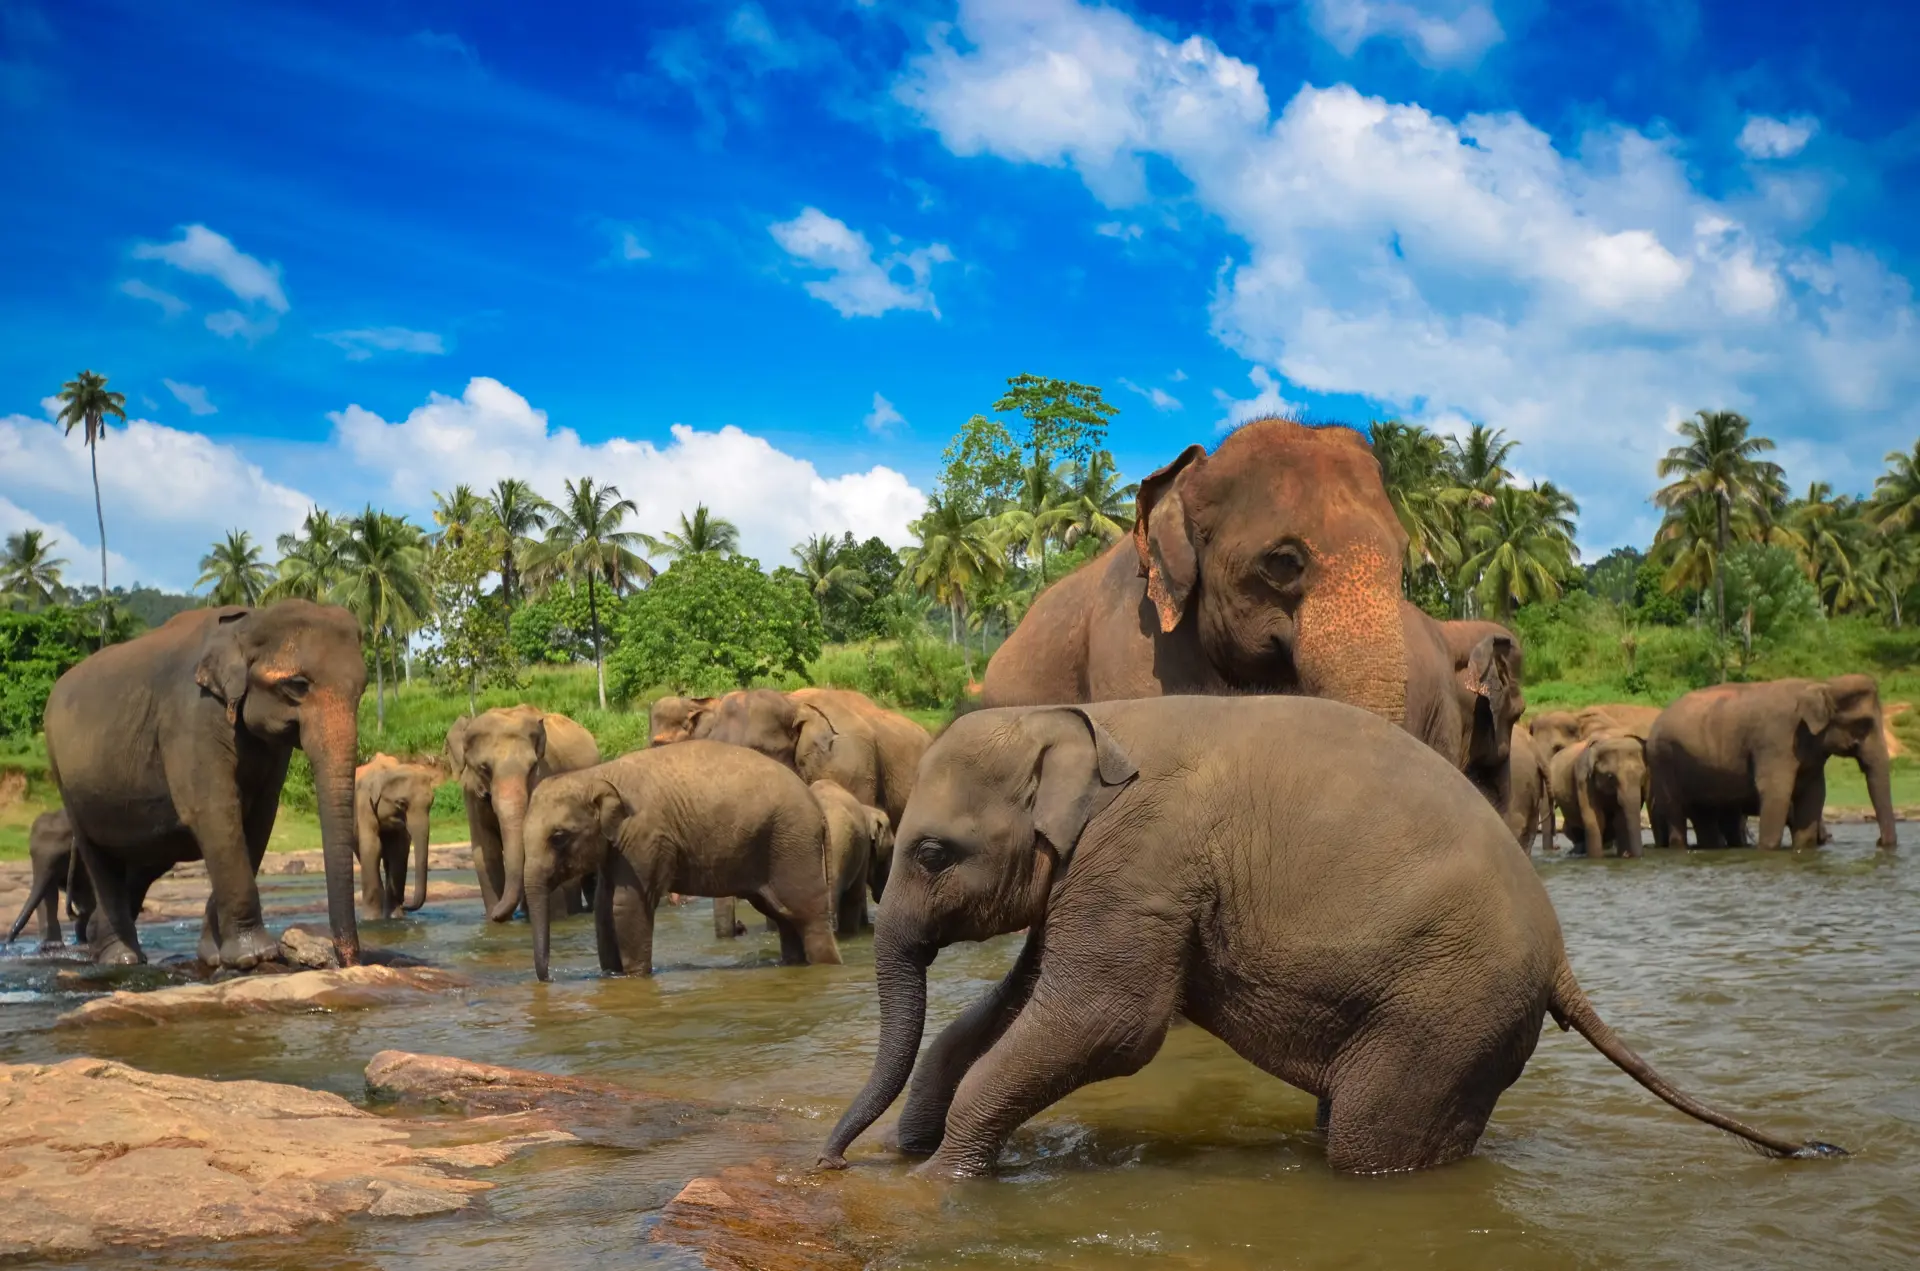 NATUR - over det meste af Sri Lanka vil det være muligt at opleve den asiatiske elefant, Check Point Travel